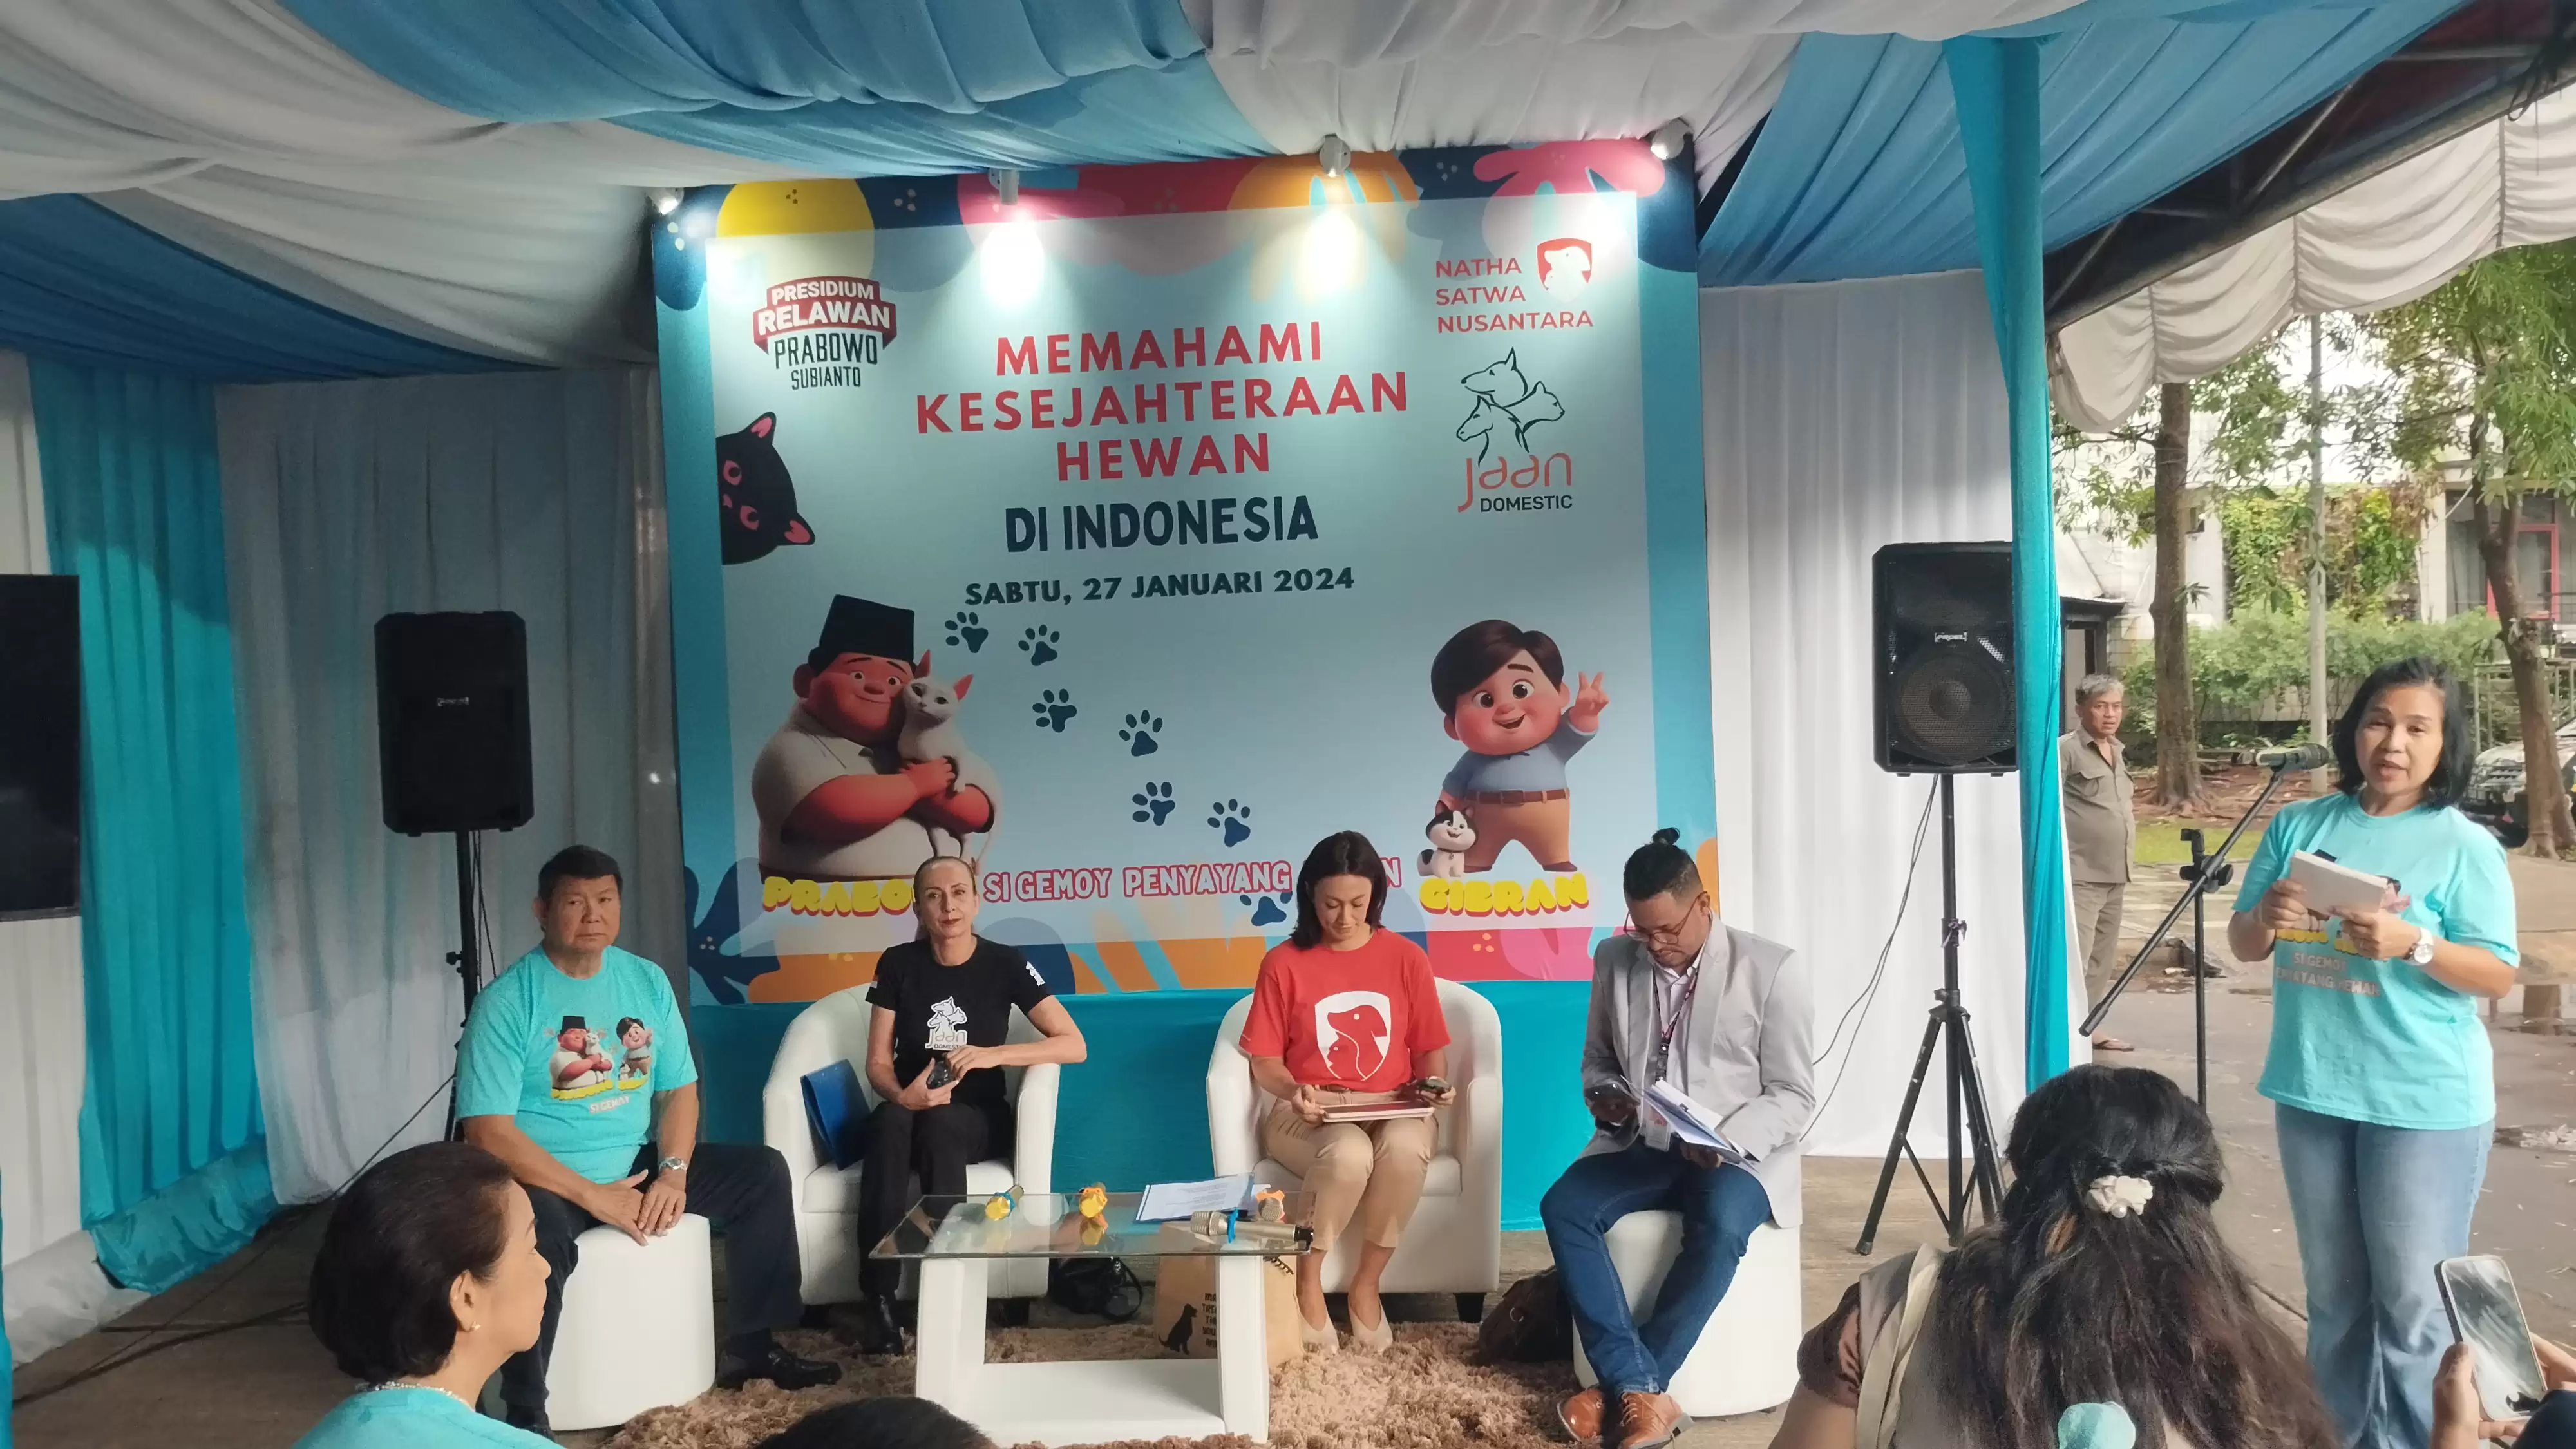 Hashim Djojohadikusumo dalam acara Memahami Kesejahteraan Hewan di Indonesia (Foto: MI)